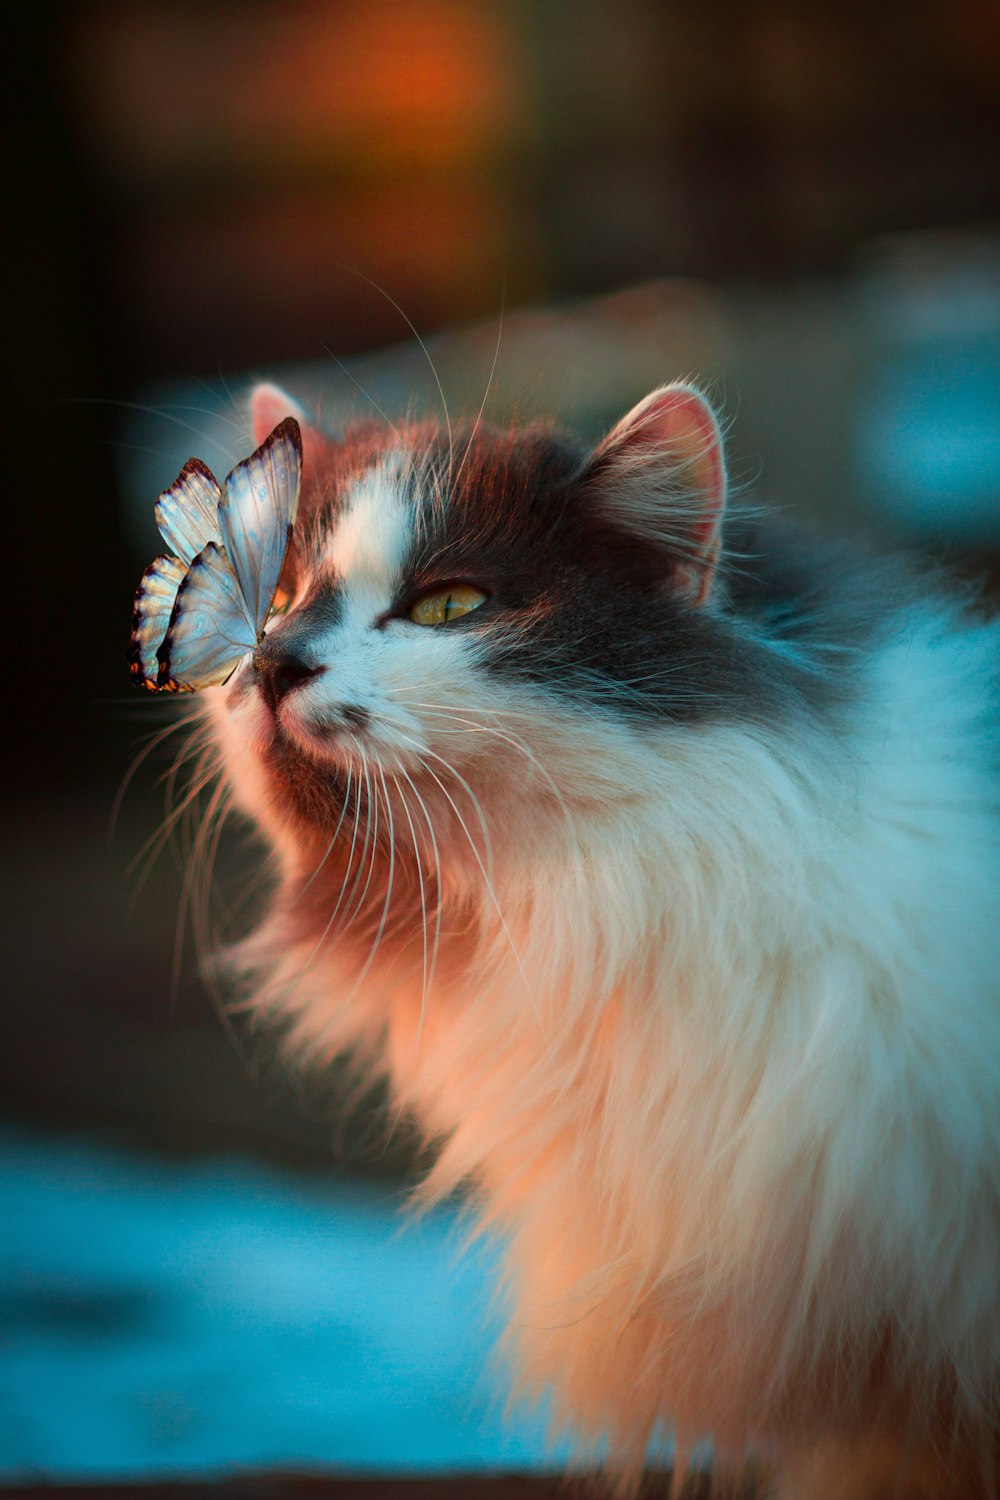 farfalla bianca che riposa sul naso del gatto